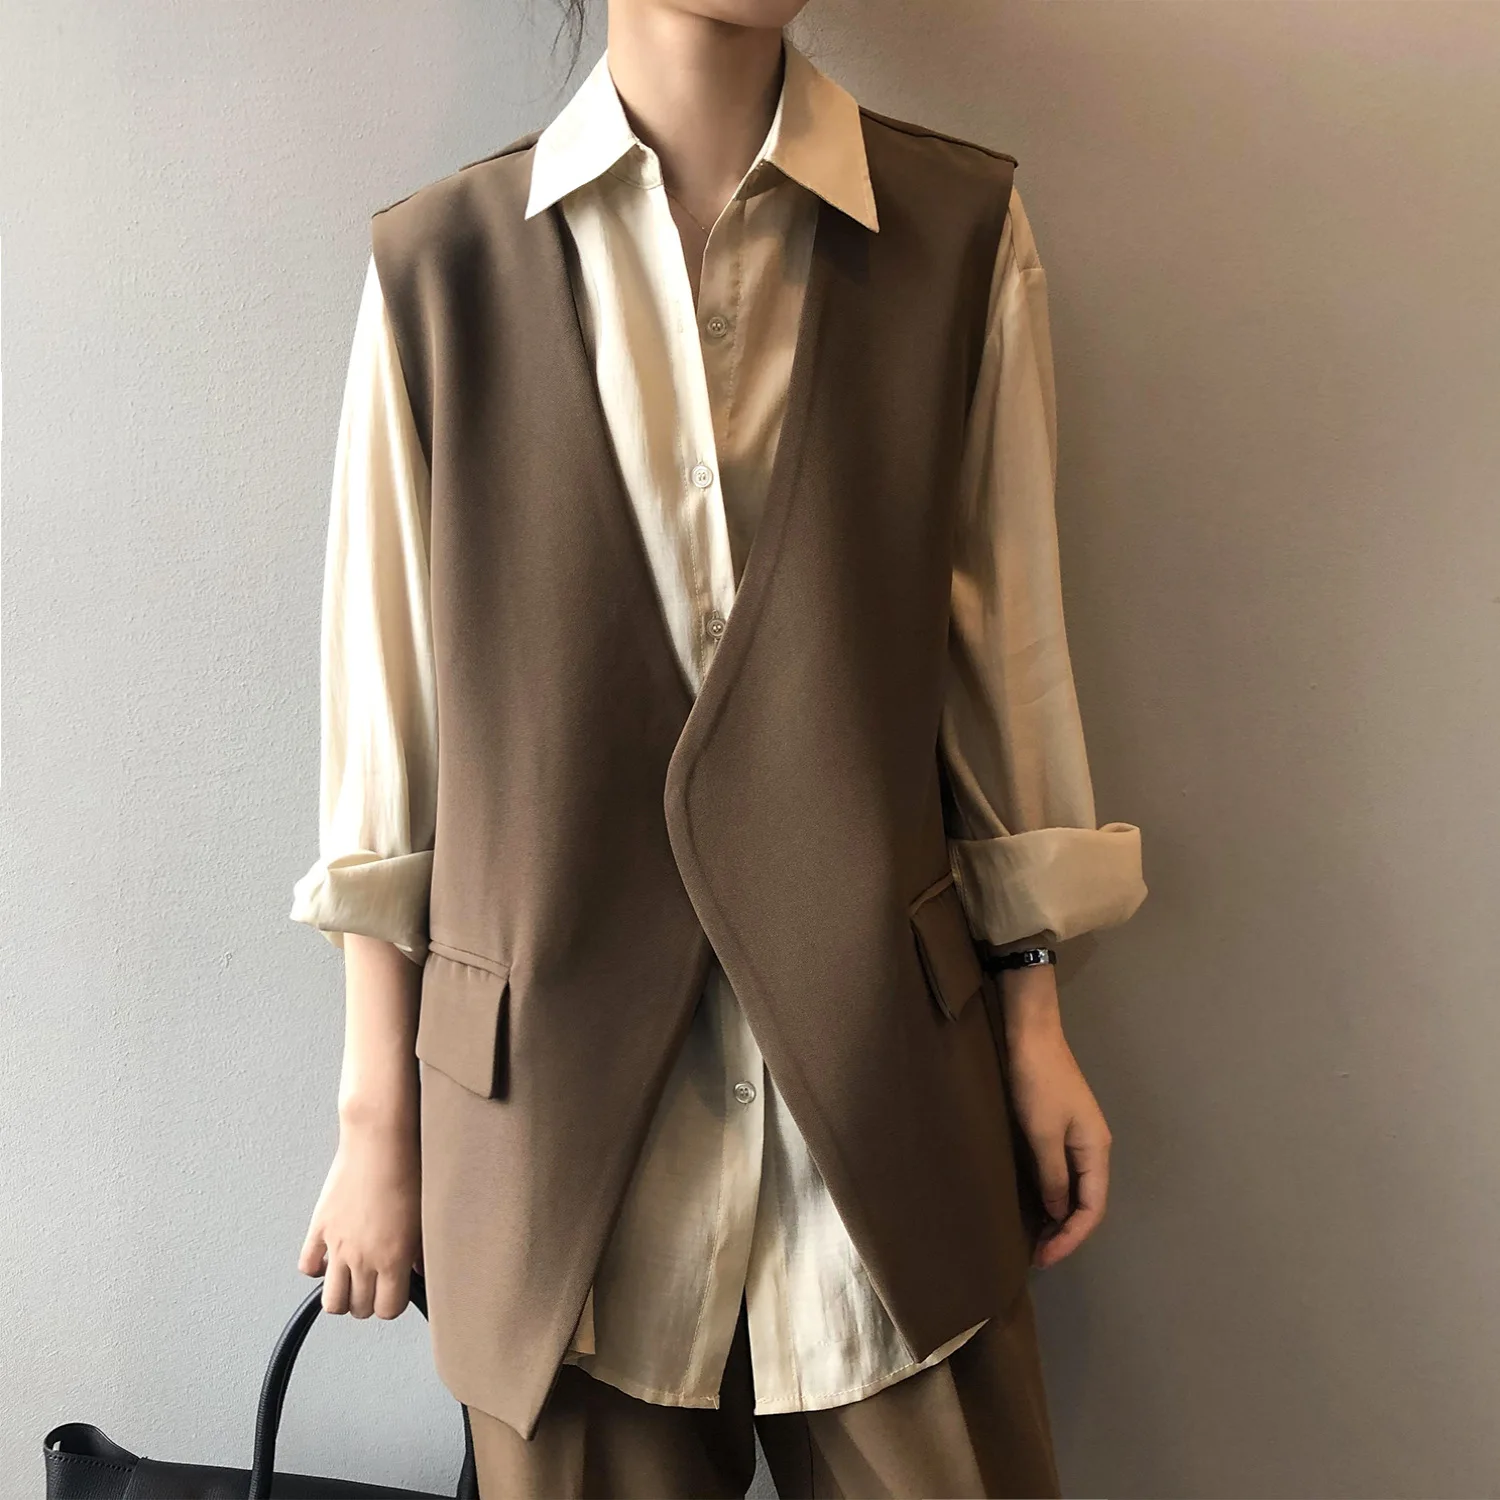 Female Suit Vest 2022 Fall Korean V-neck Sleevless Cardigan Loose Fashion Elegant Lady Back Slit Workplace Coat Jacket Clothing